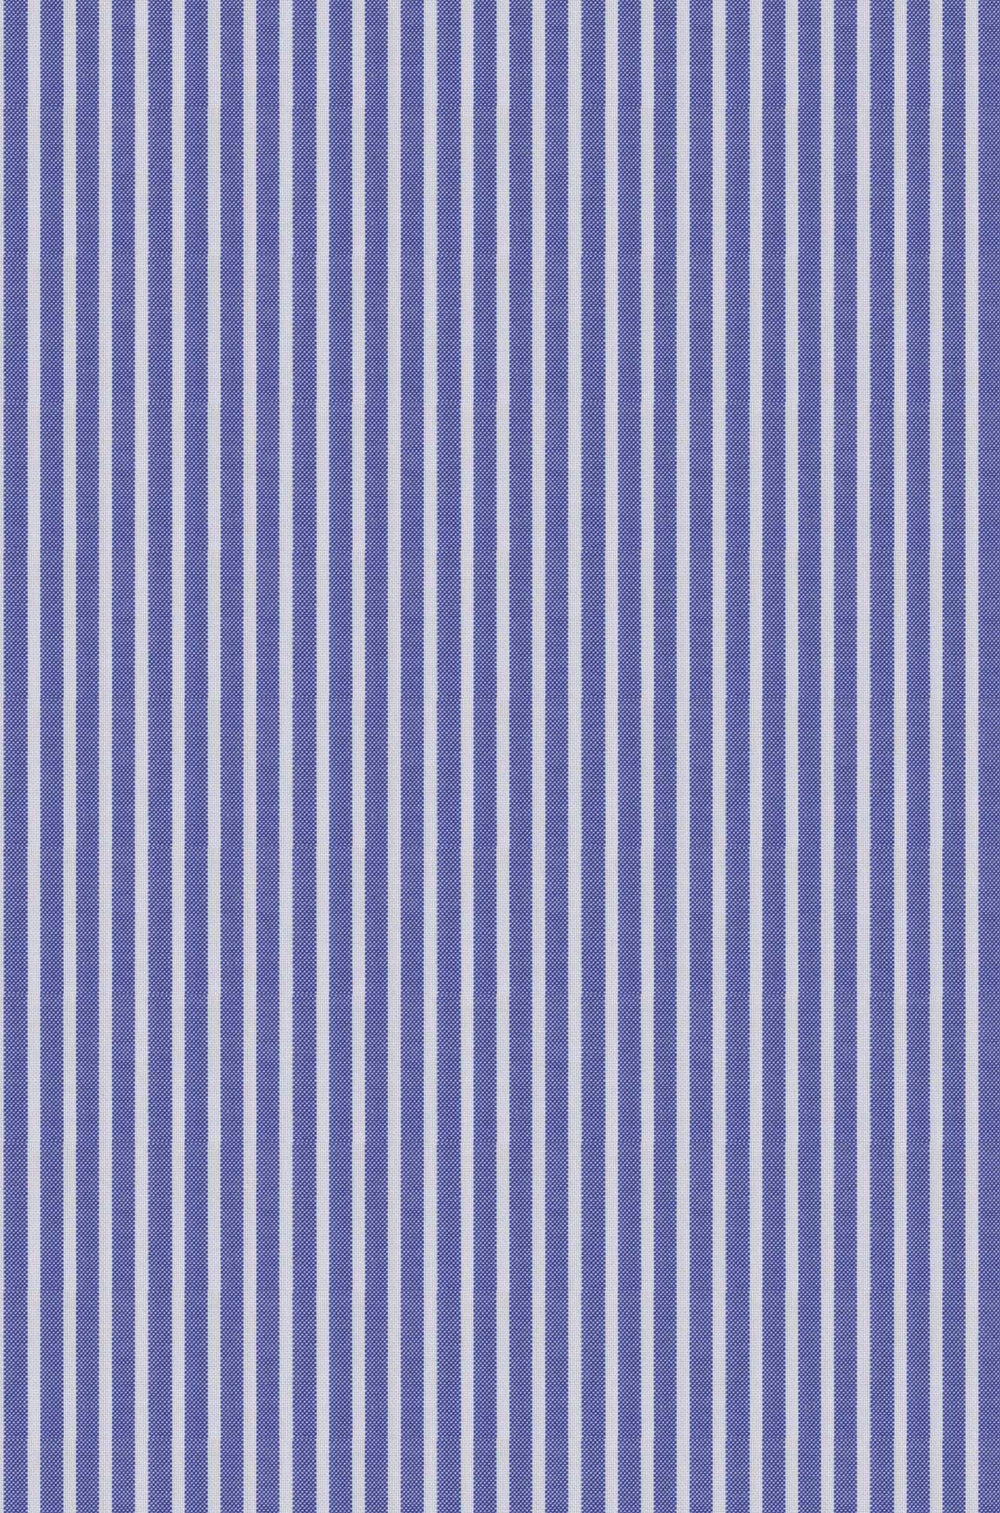 Denim Blue & White Textured Stripe